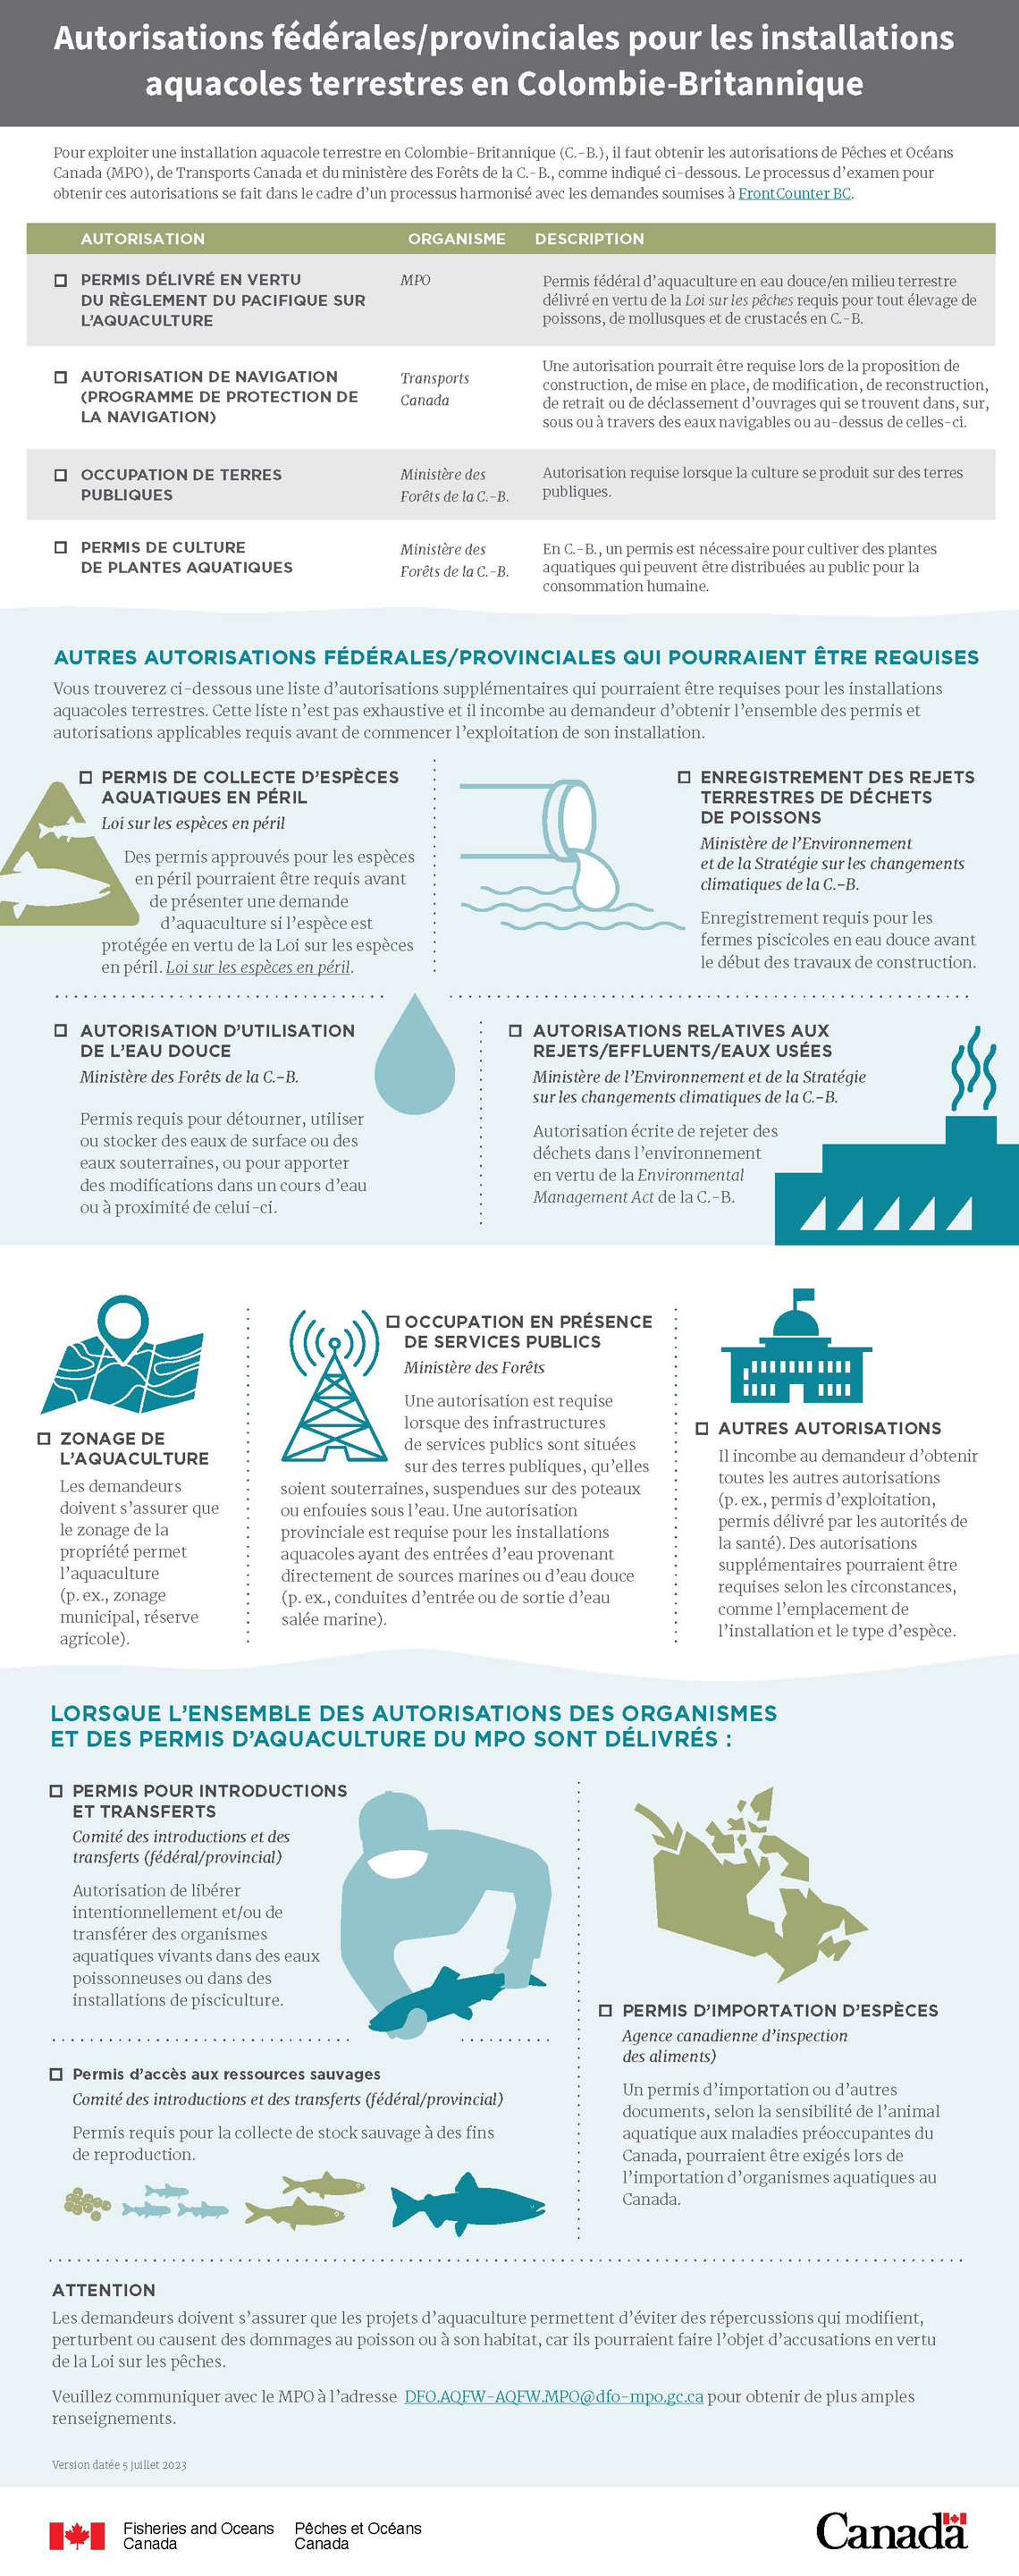 Infographie: Autorisations fédérales/provincials pour les installations aquacoles terrestres en Colombie-Britannique